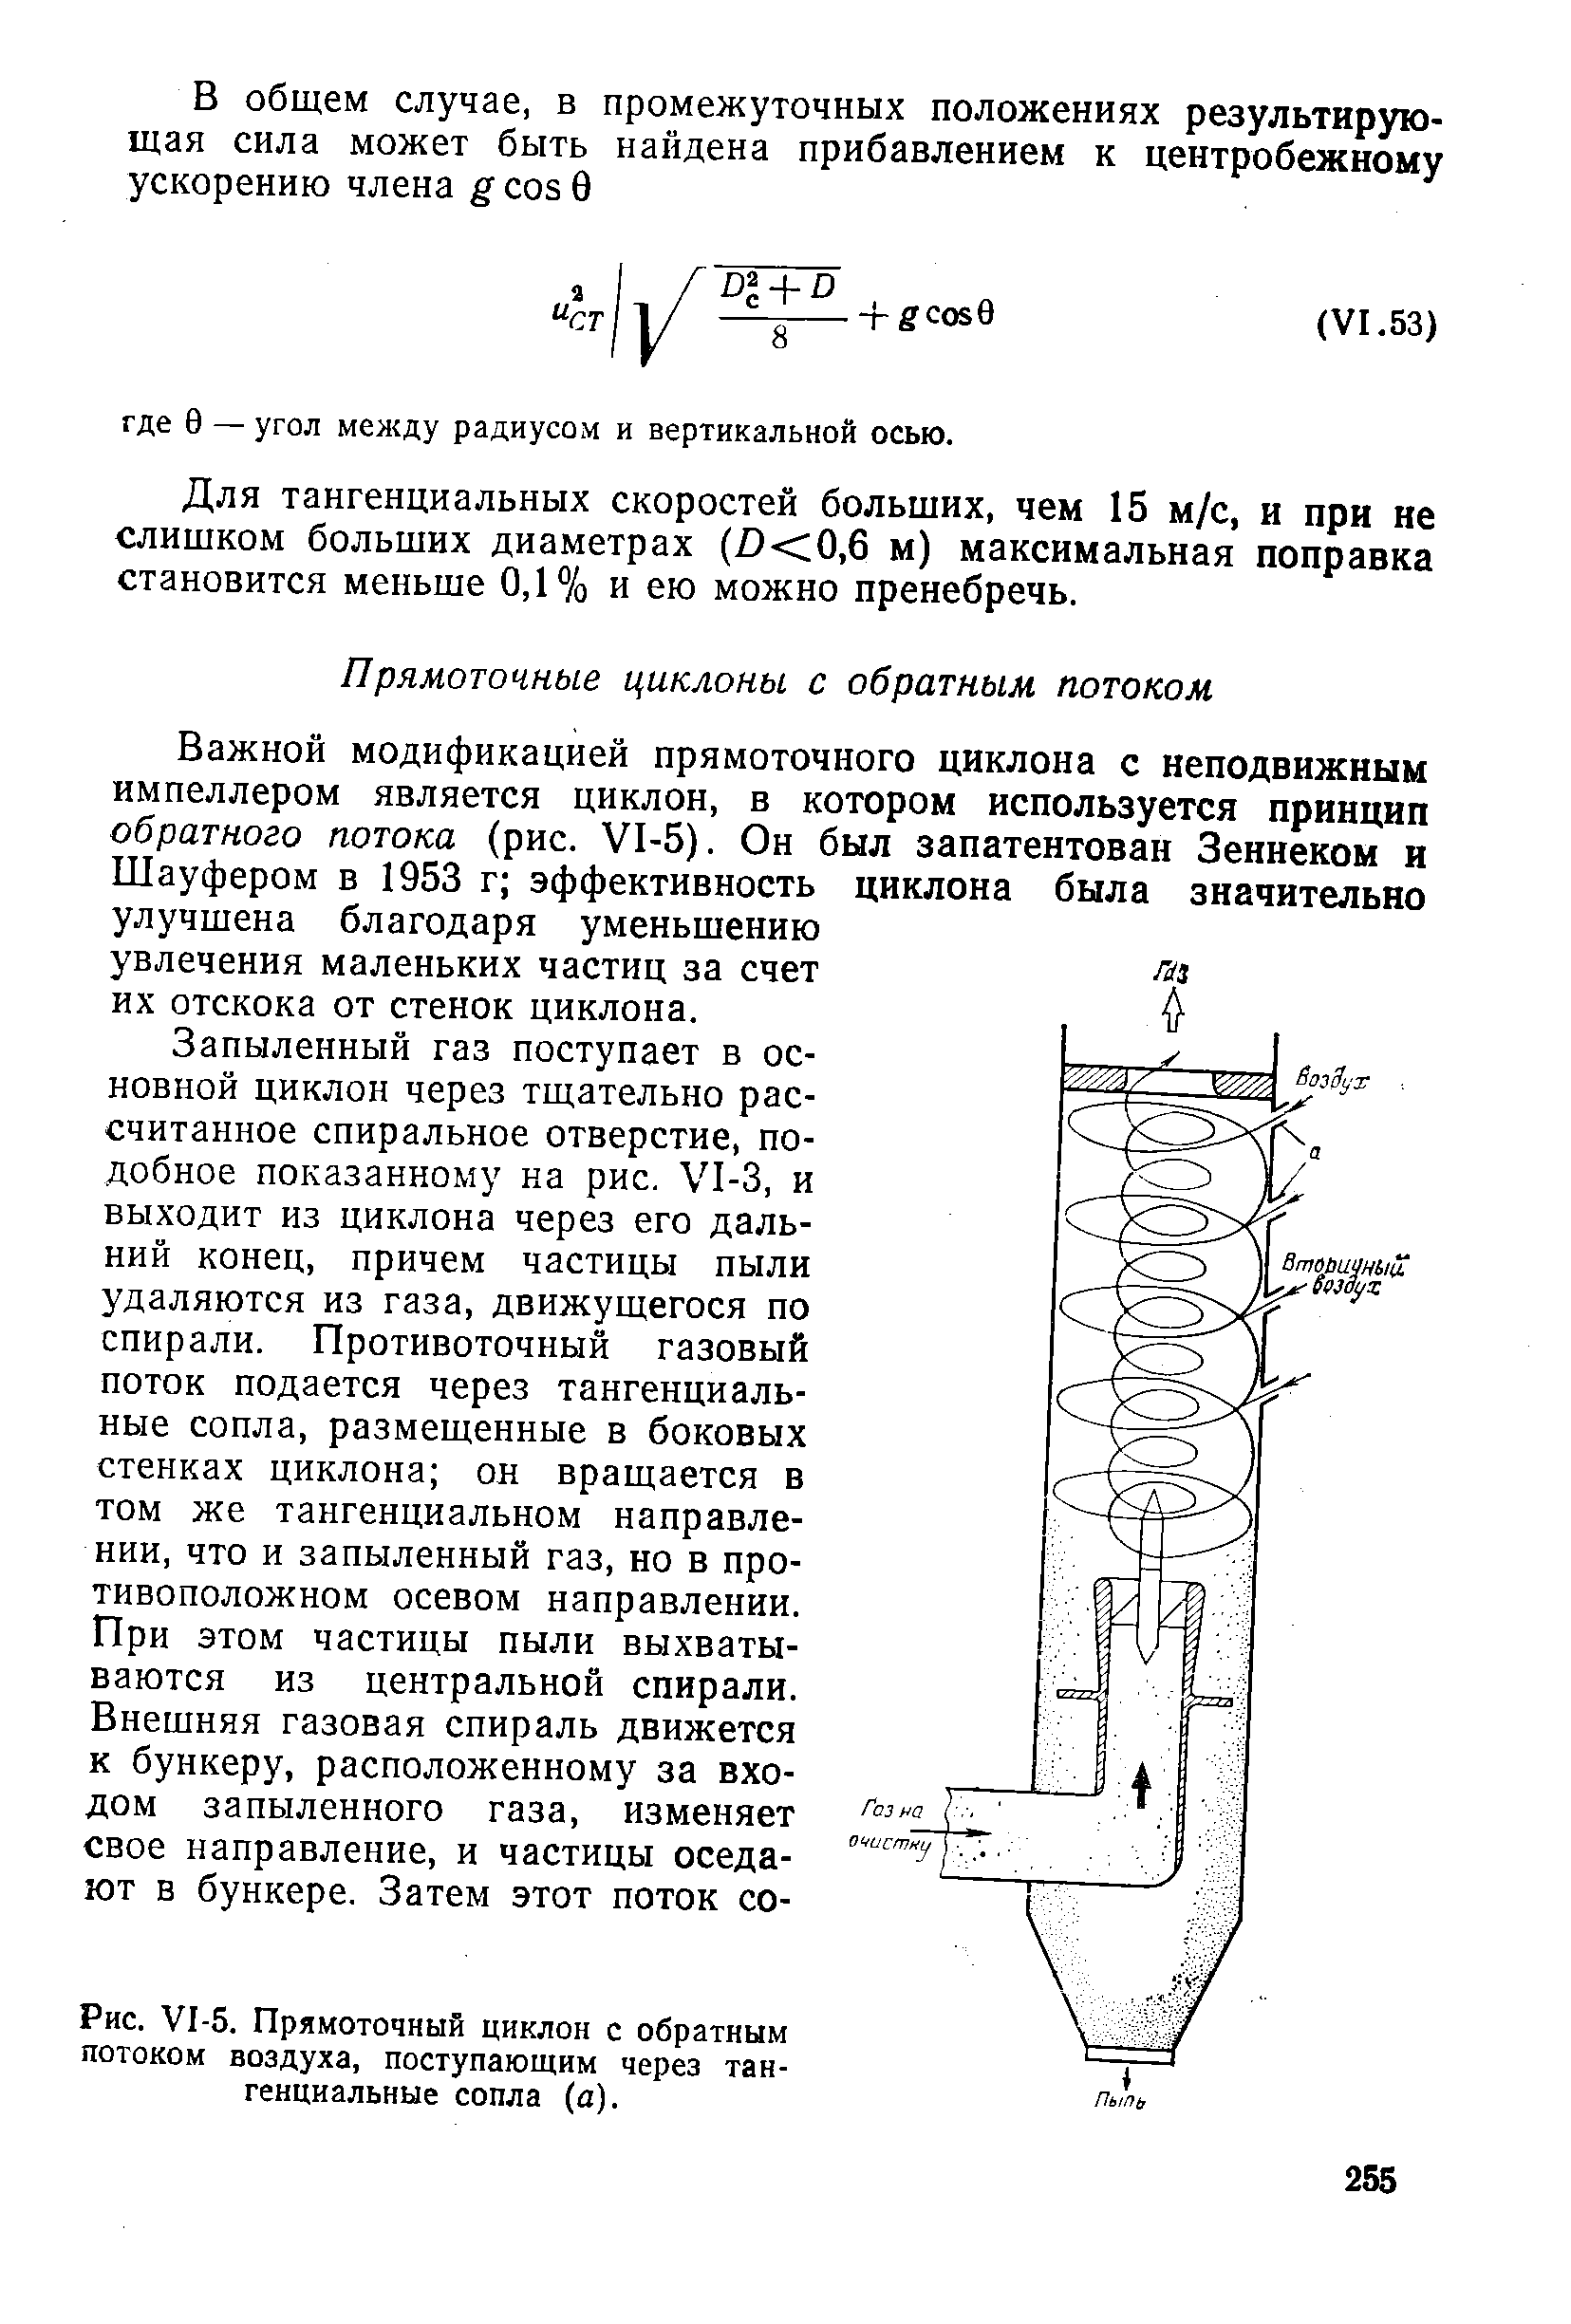 Шауфером в 1953 г эффективность улучшена благодаря уменьшению увлечения маленьких частиц за счет их отскока от стенок циклона.